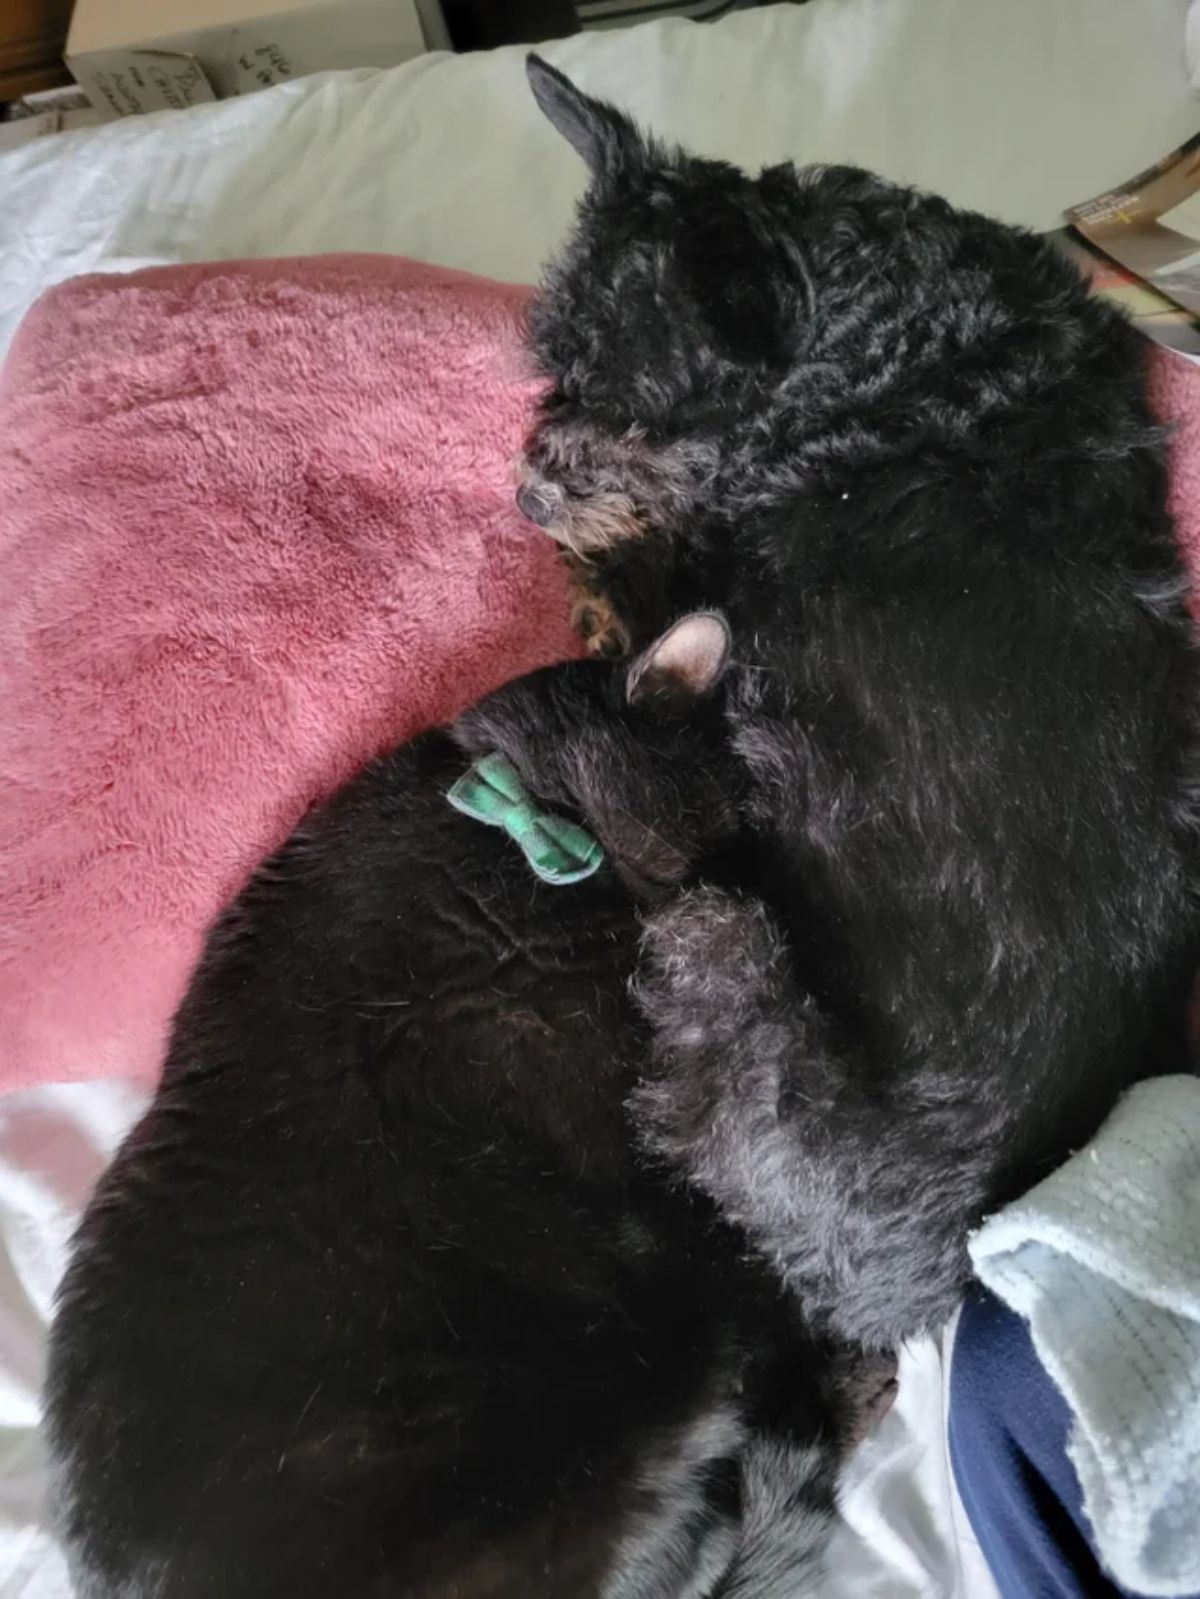 black cat cuddling with a black fluffy dog